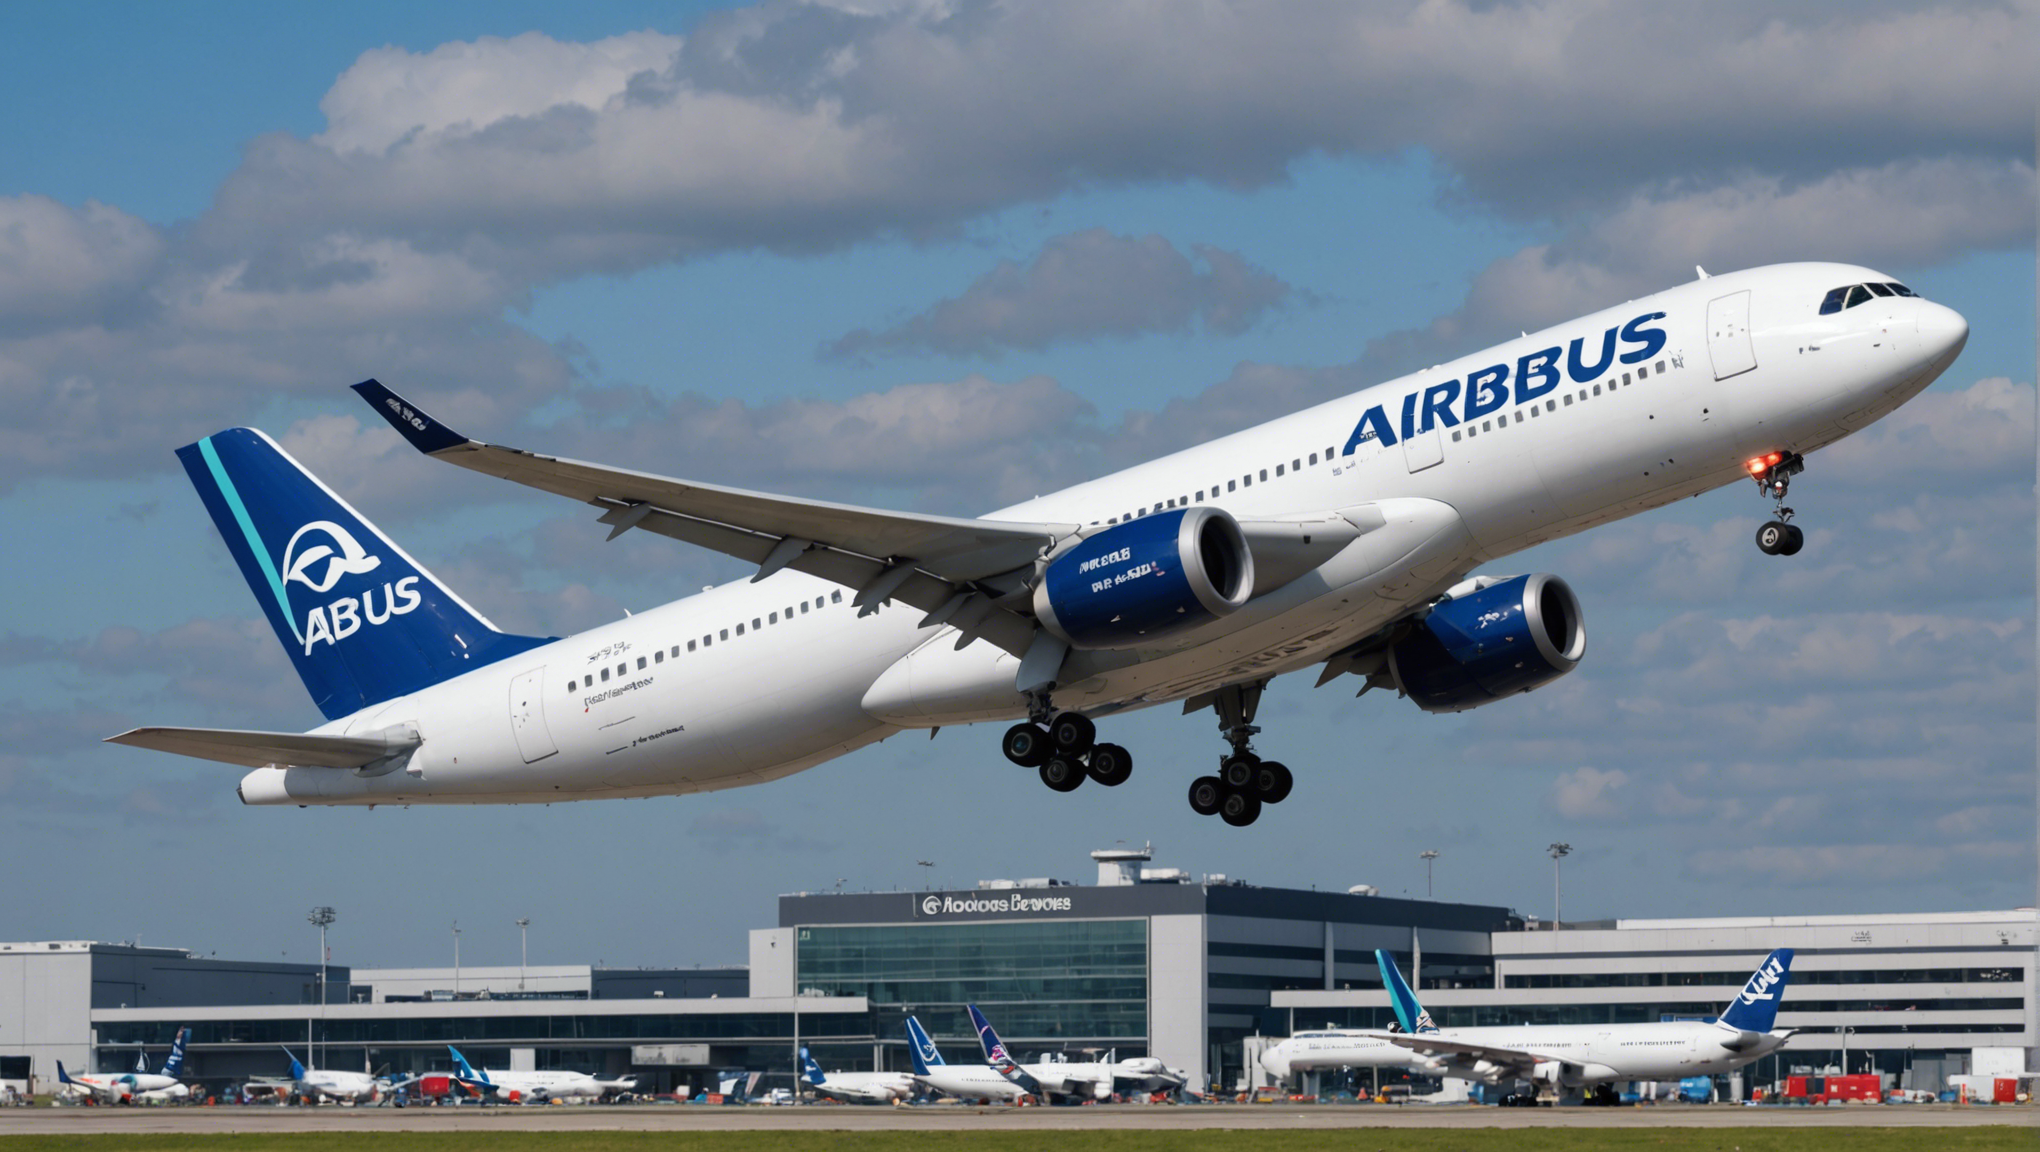 airbus révise à la baisse ses prévisions de livraison d’avions commerciaux. découvrez les conséquences de cette annonce sur l'industrie aéronautique.